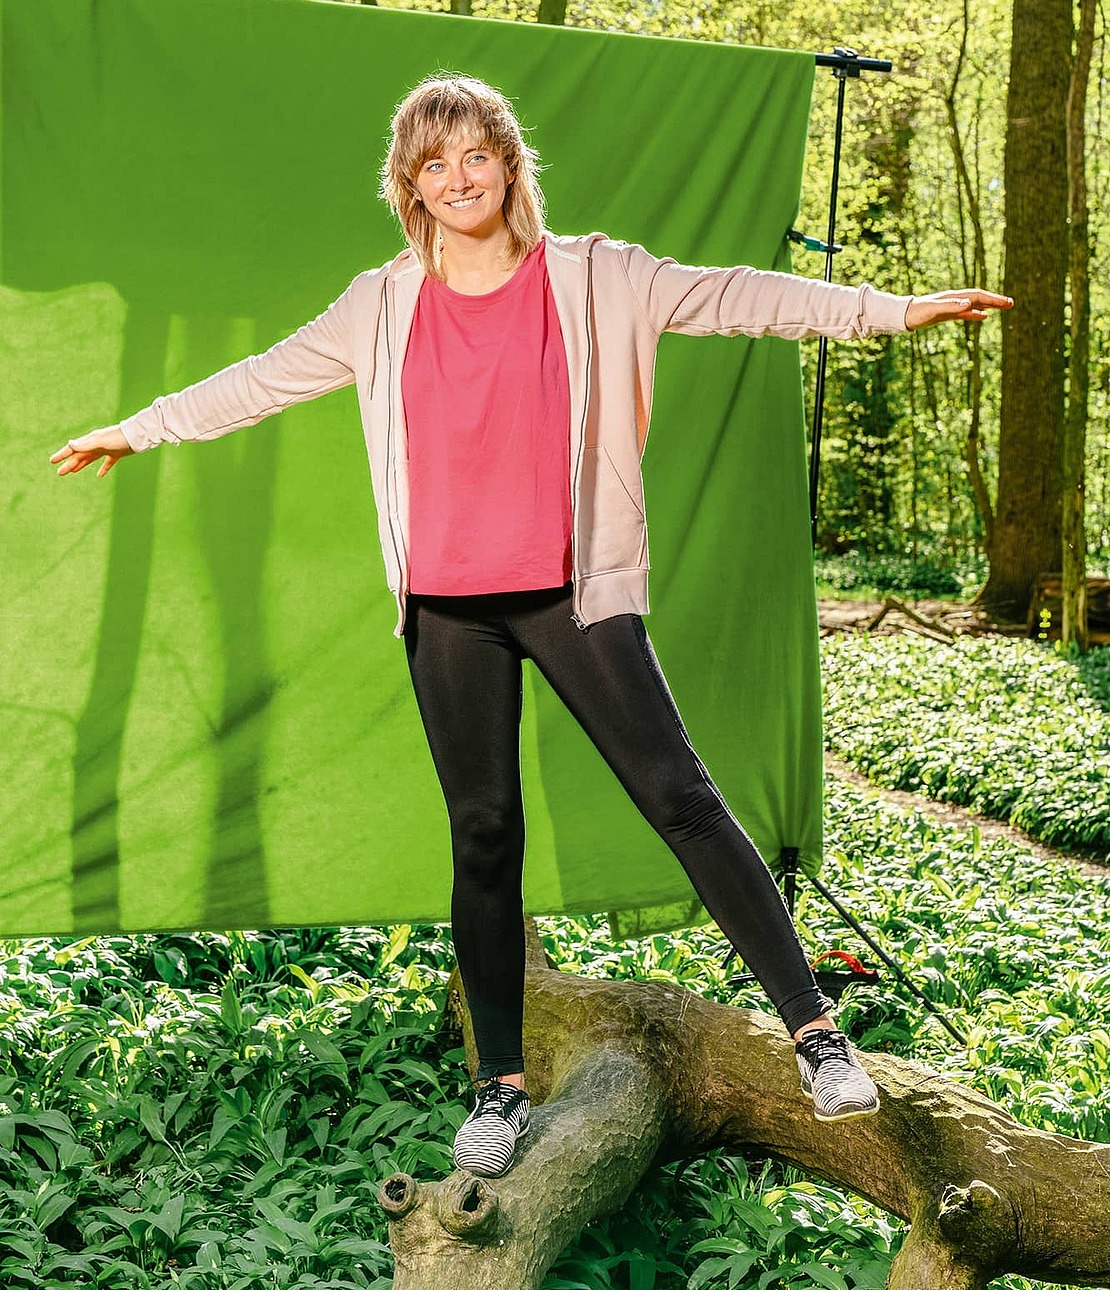 Frau balanciert im Wald auf Baumstamm vor grünem Hintergrund